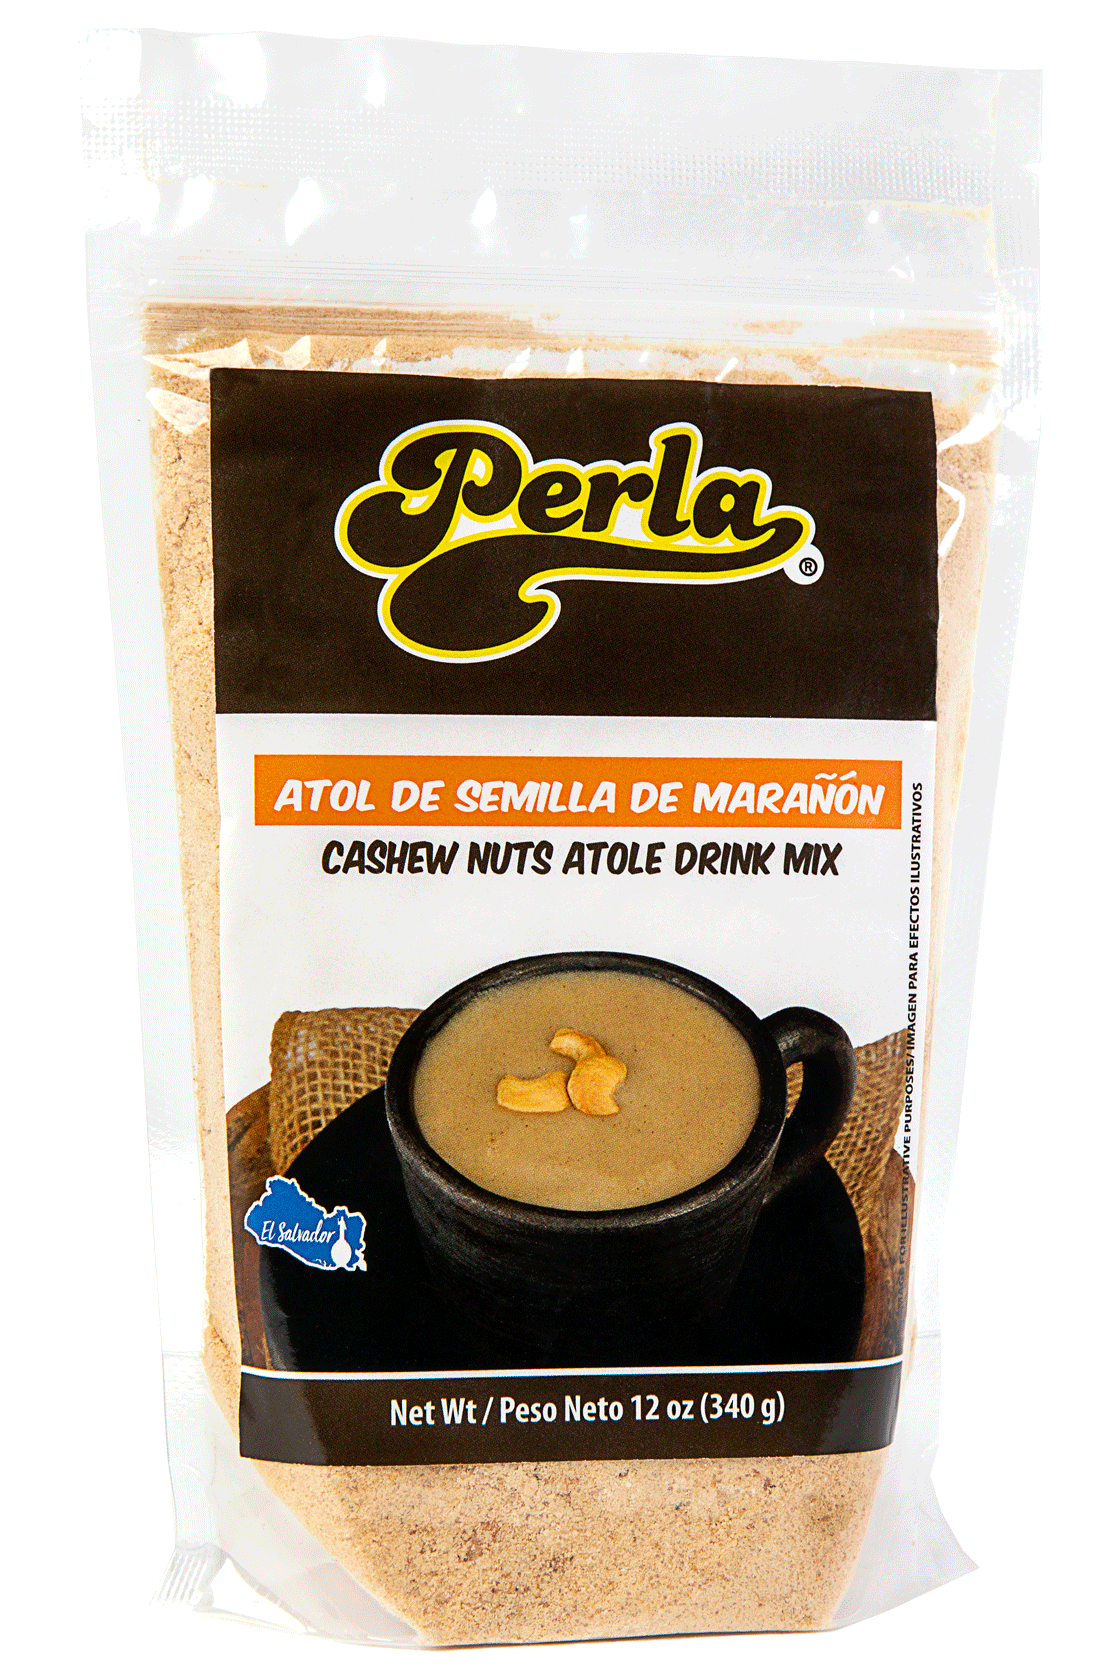 Perla Atol de Semilla Marañon (Cashew Nuts Atole Drink Mix) 12 oz